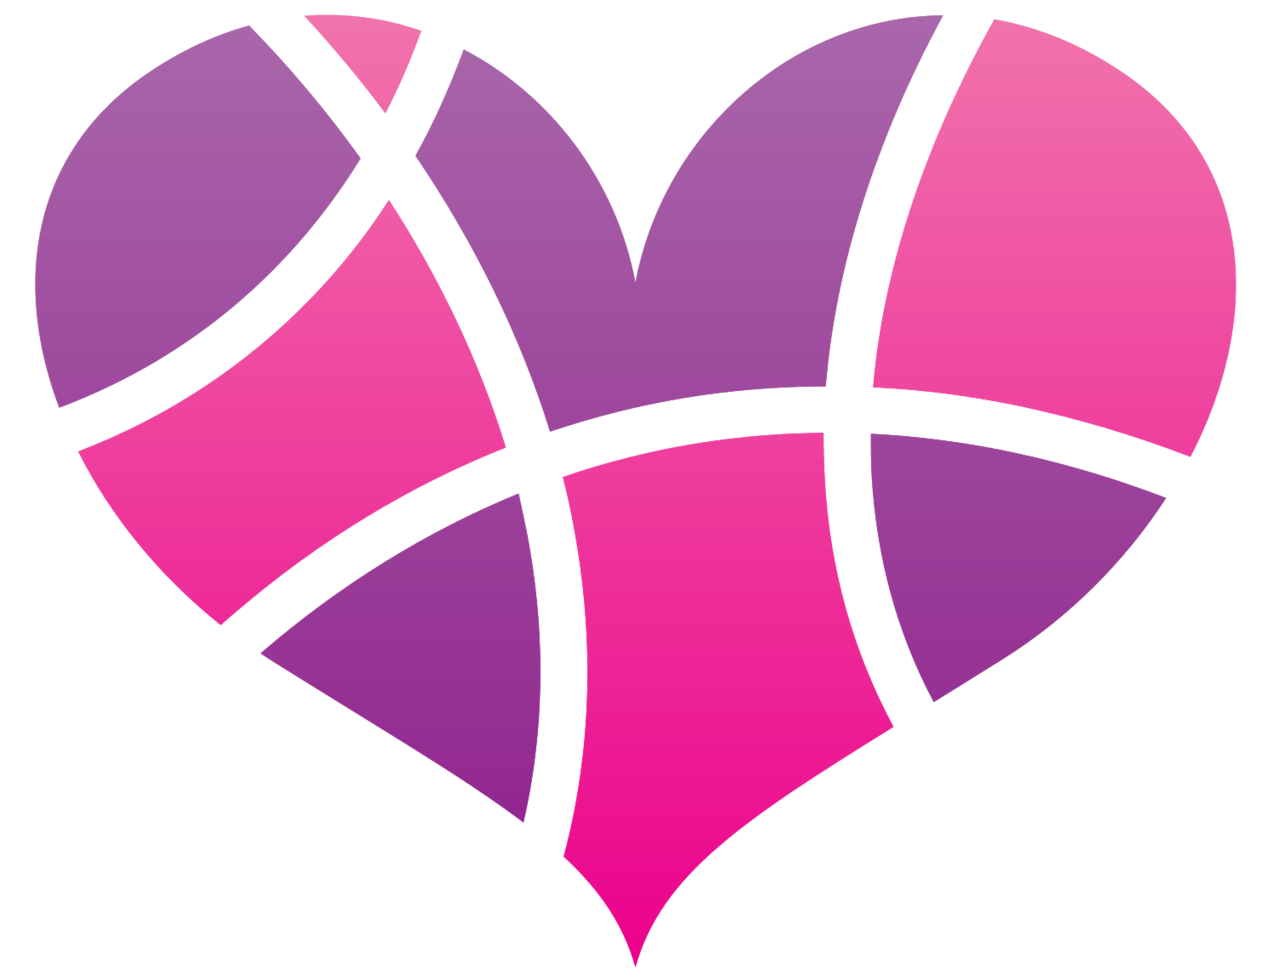 logotipo del corazón png